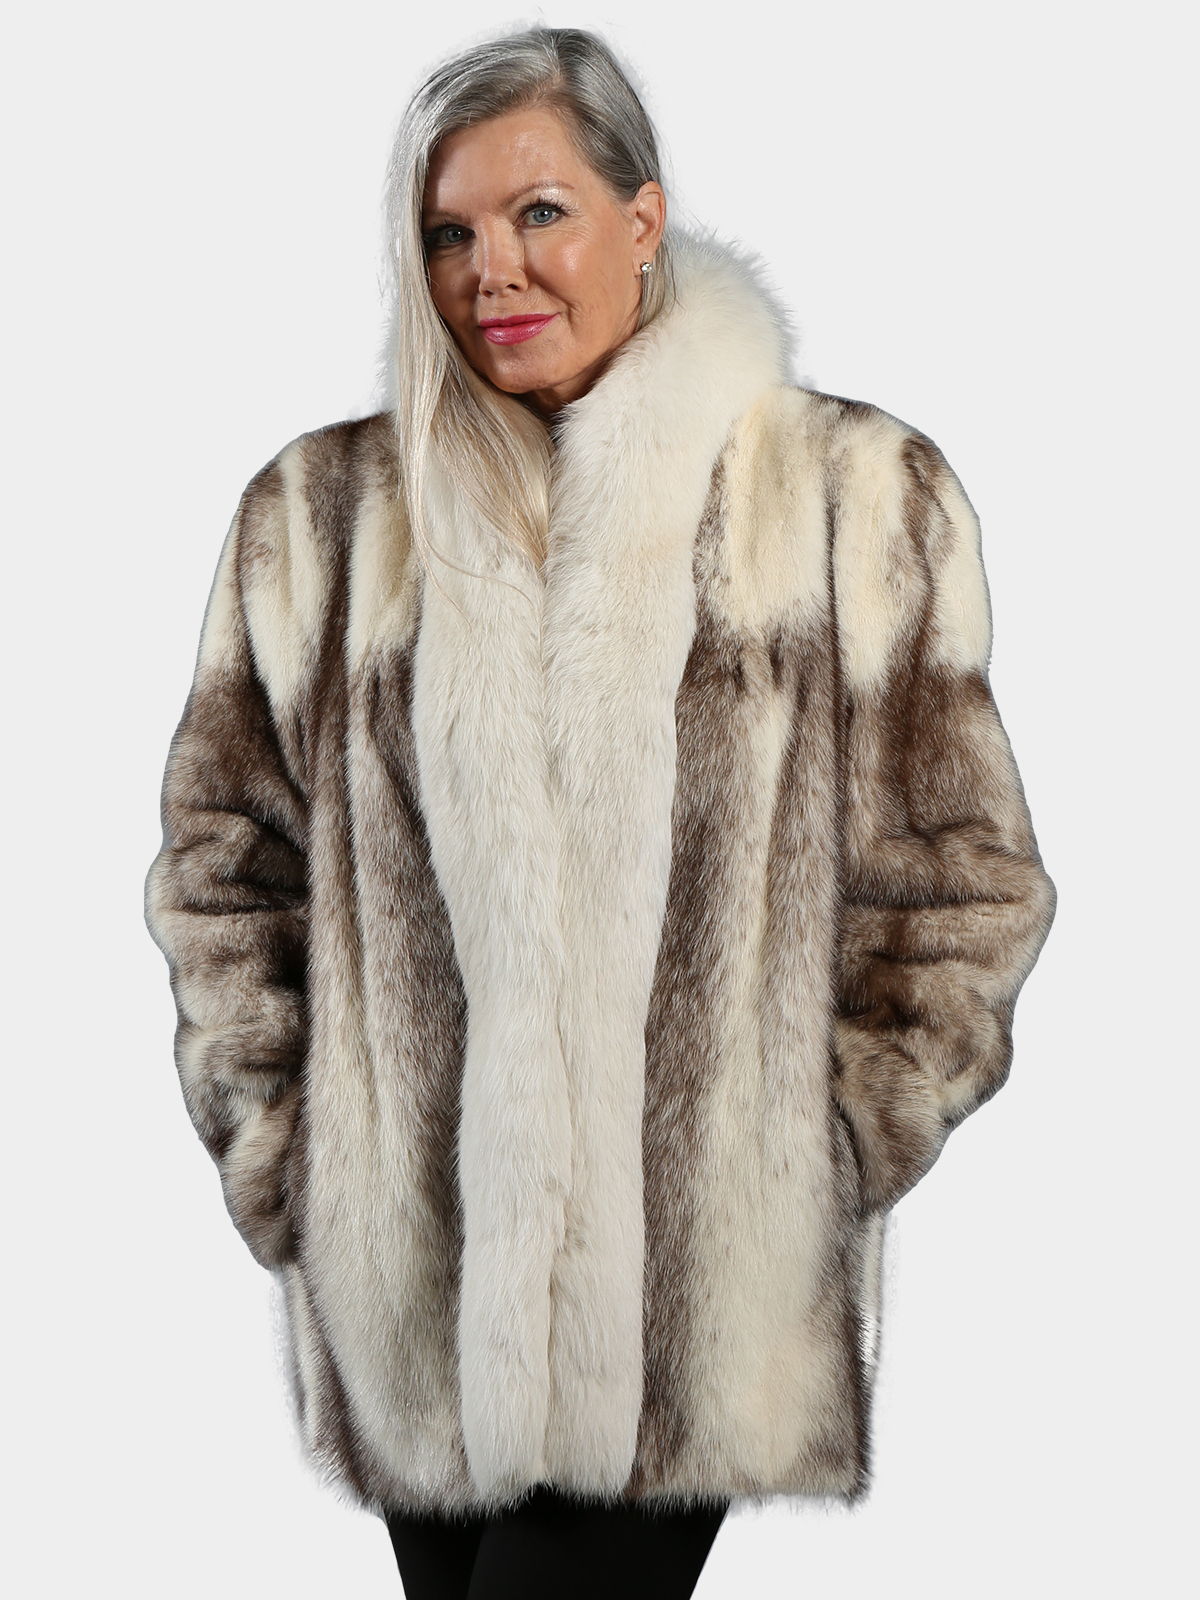 Full Length Cross Fox Fur Coat Tuxedo Cross Fox Fur